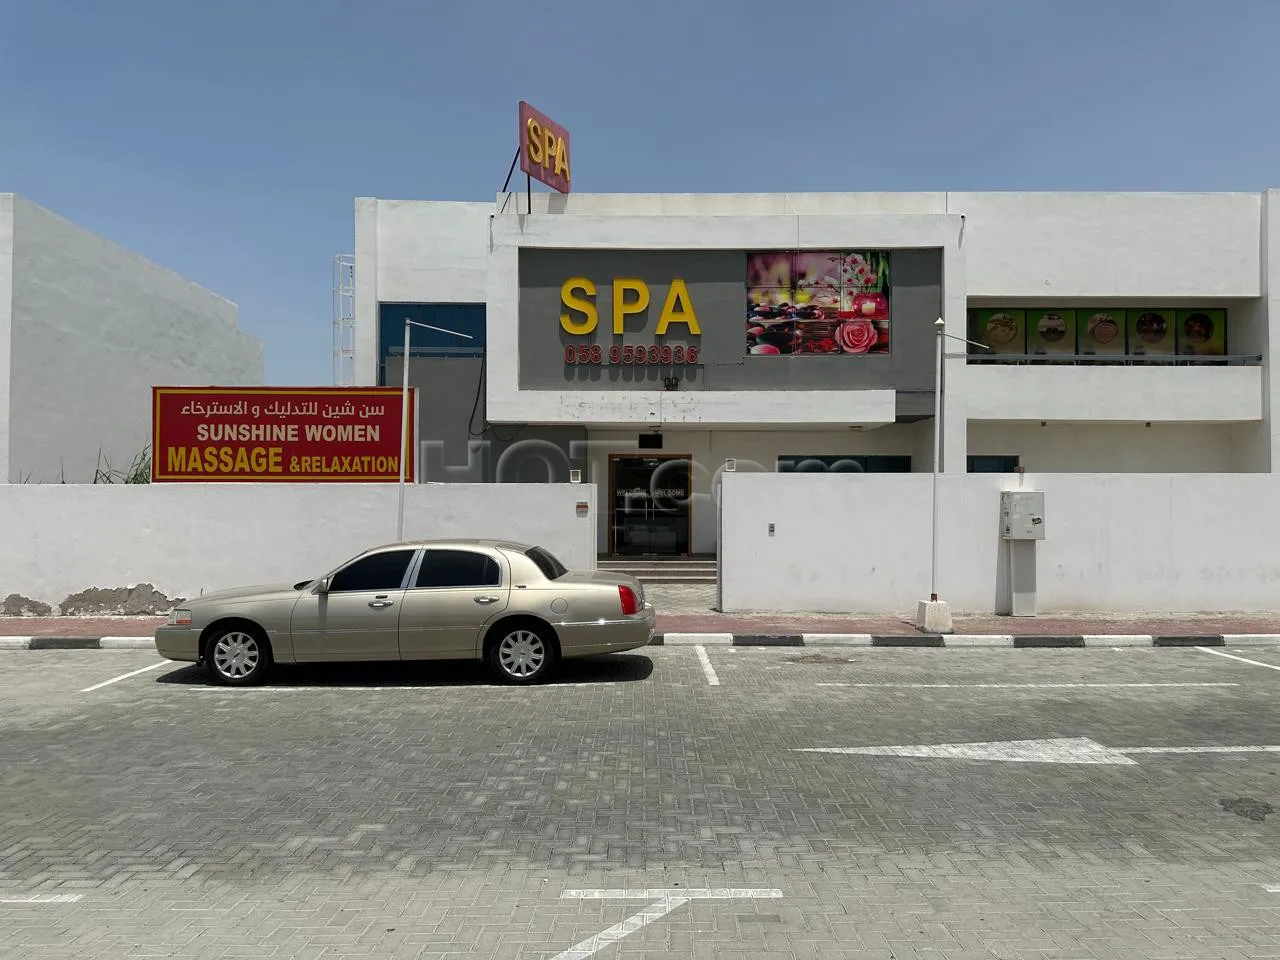 Ajman City, United Arab Emirates Sunshine Massage and Relaxation Spa